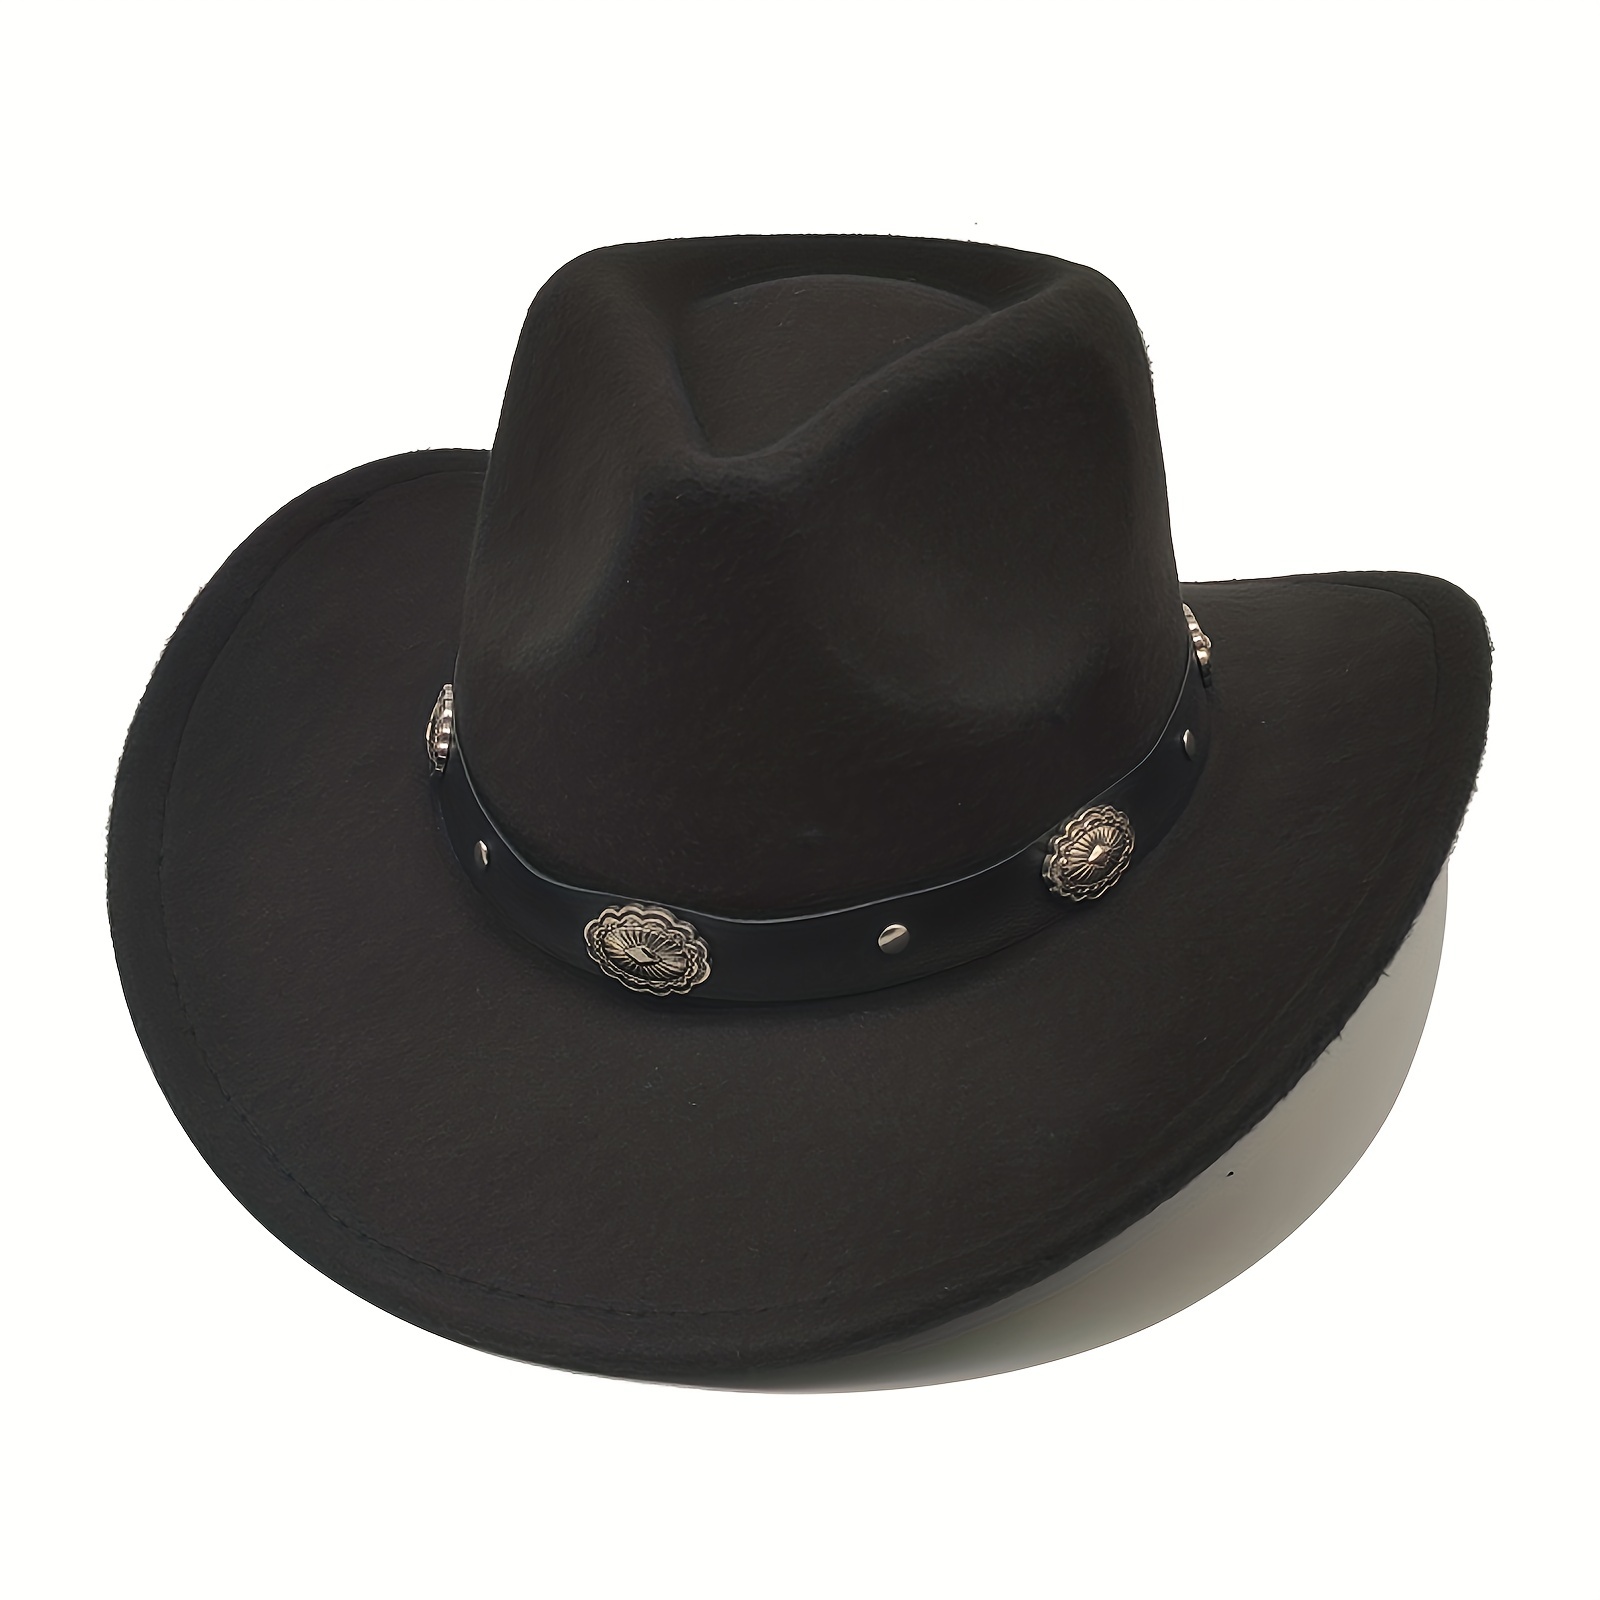 1pc Mens Classic Felt Wide Brim Western Style Cowboy Cowgirl Hat